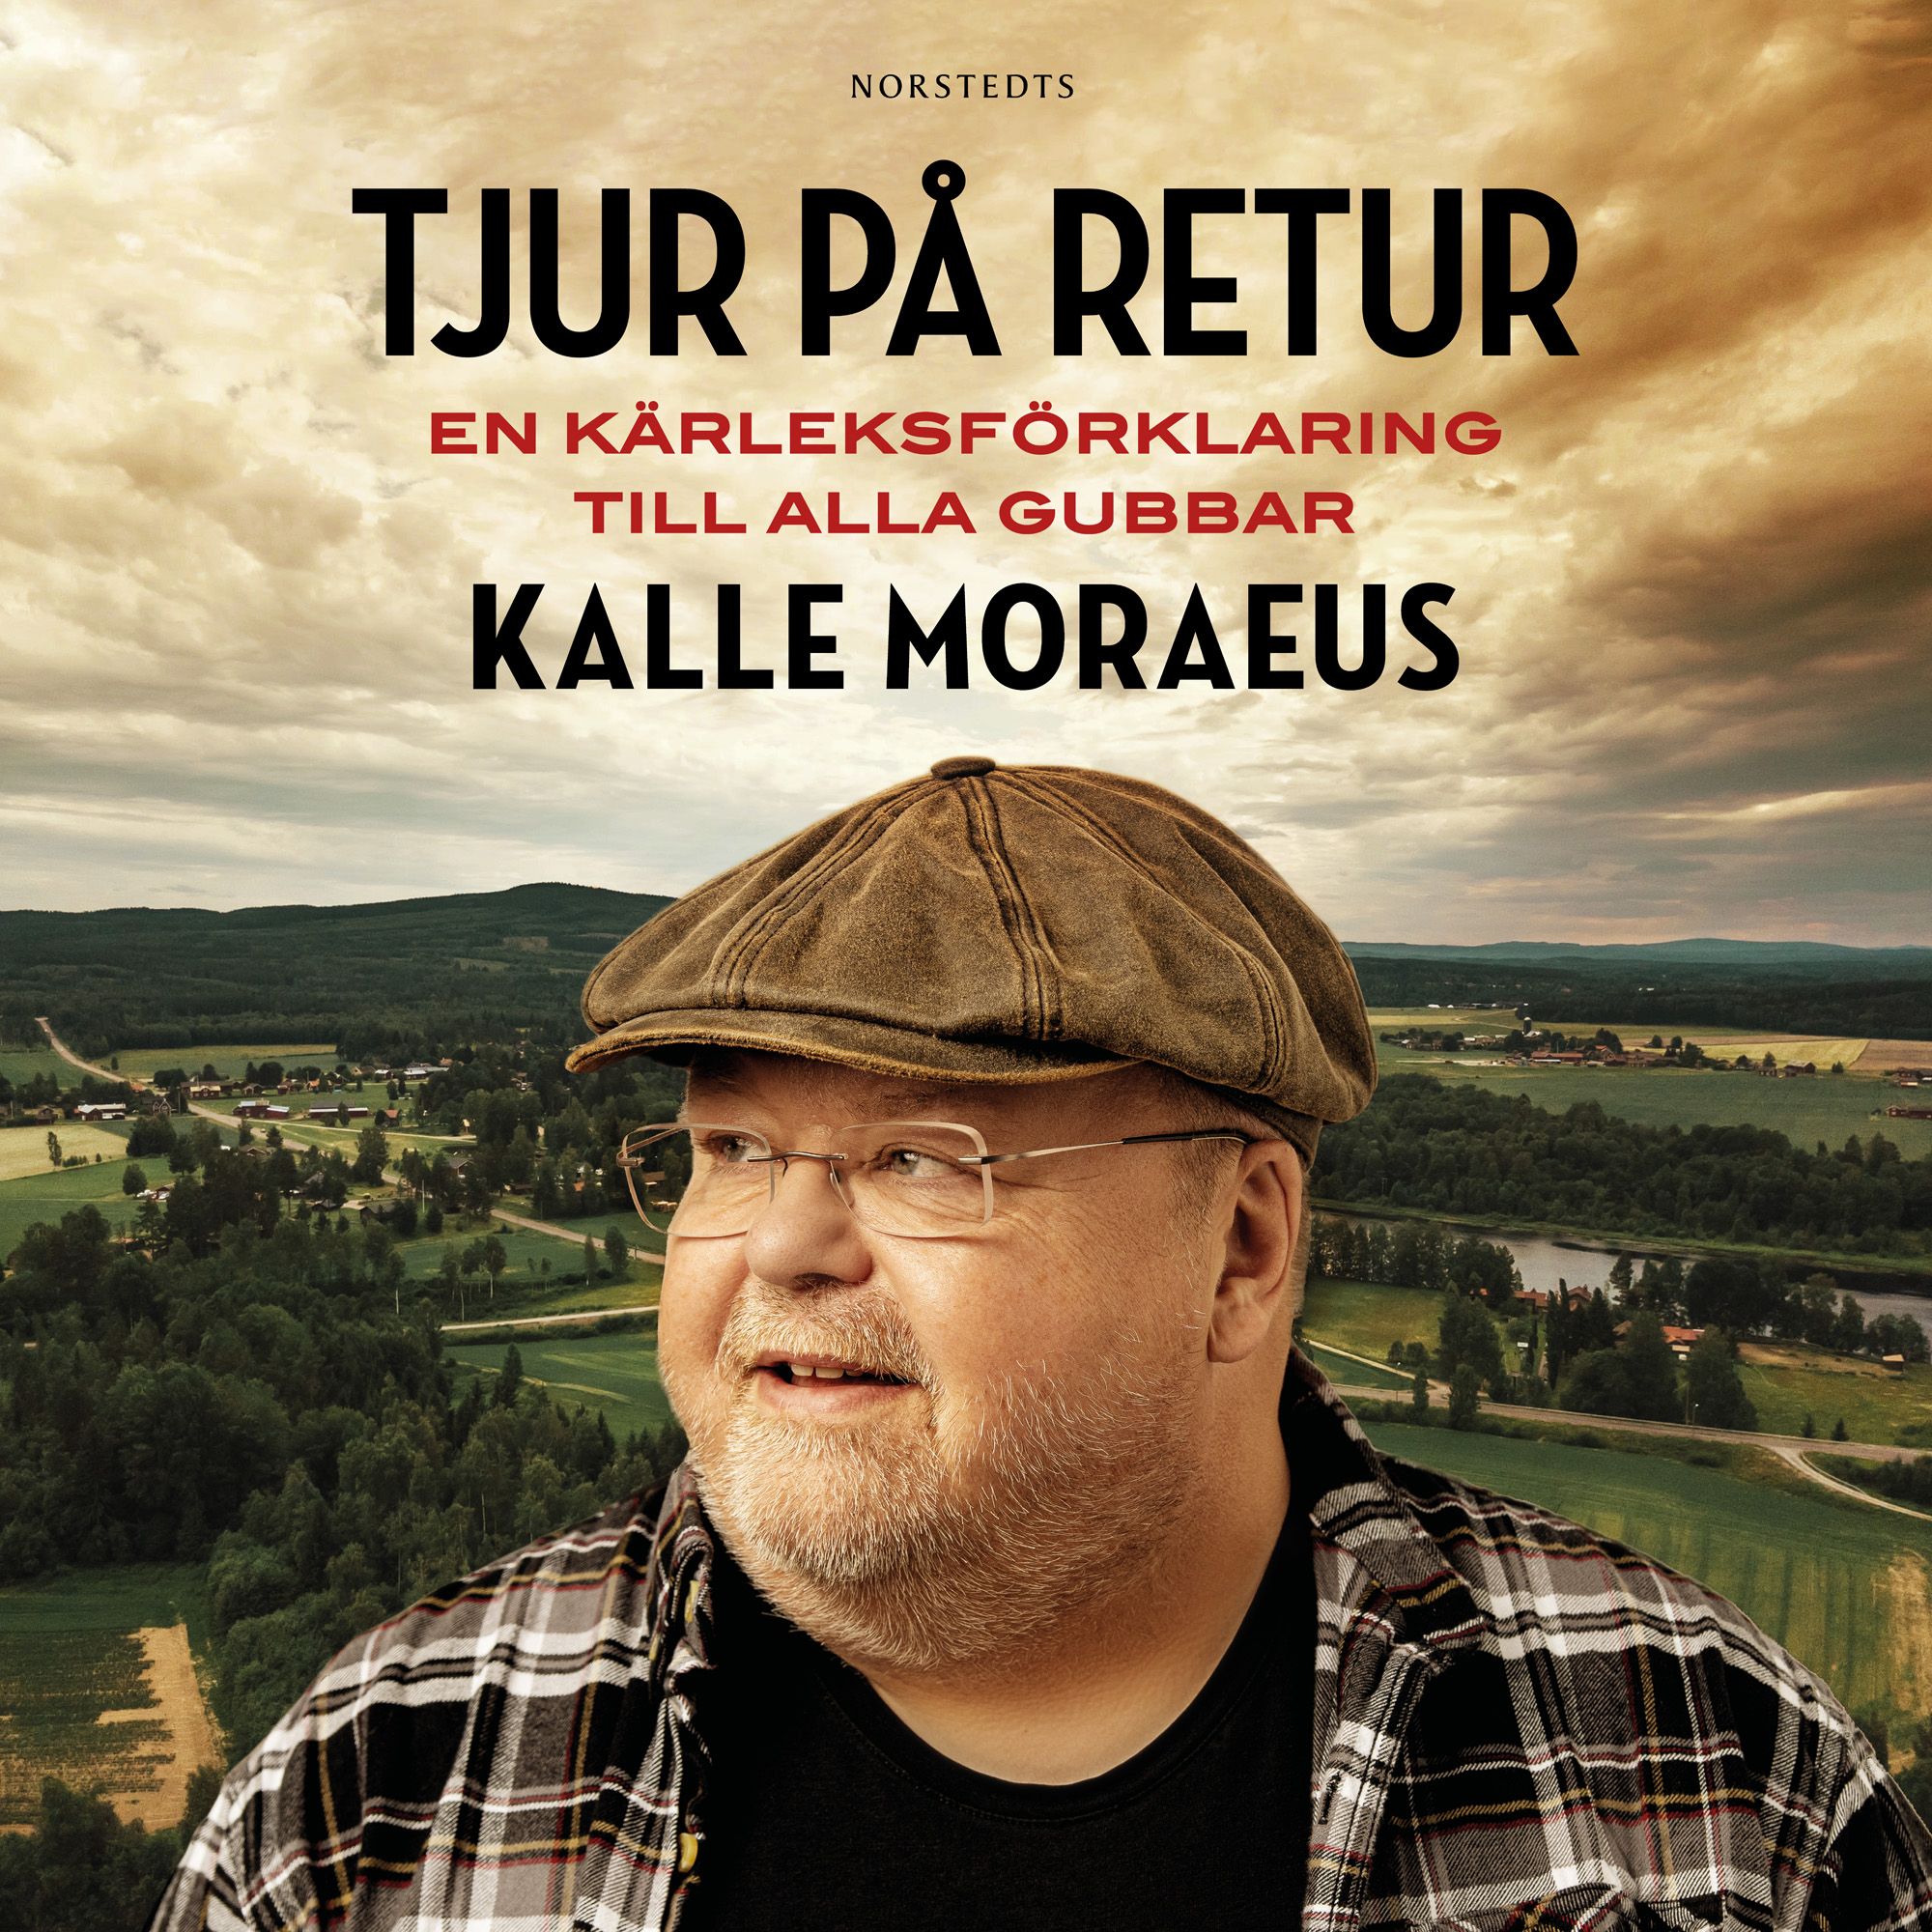 Tjur på retur : En kärleksförklaring till alla gubbar, audiobook by Kalle Moraeus